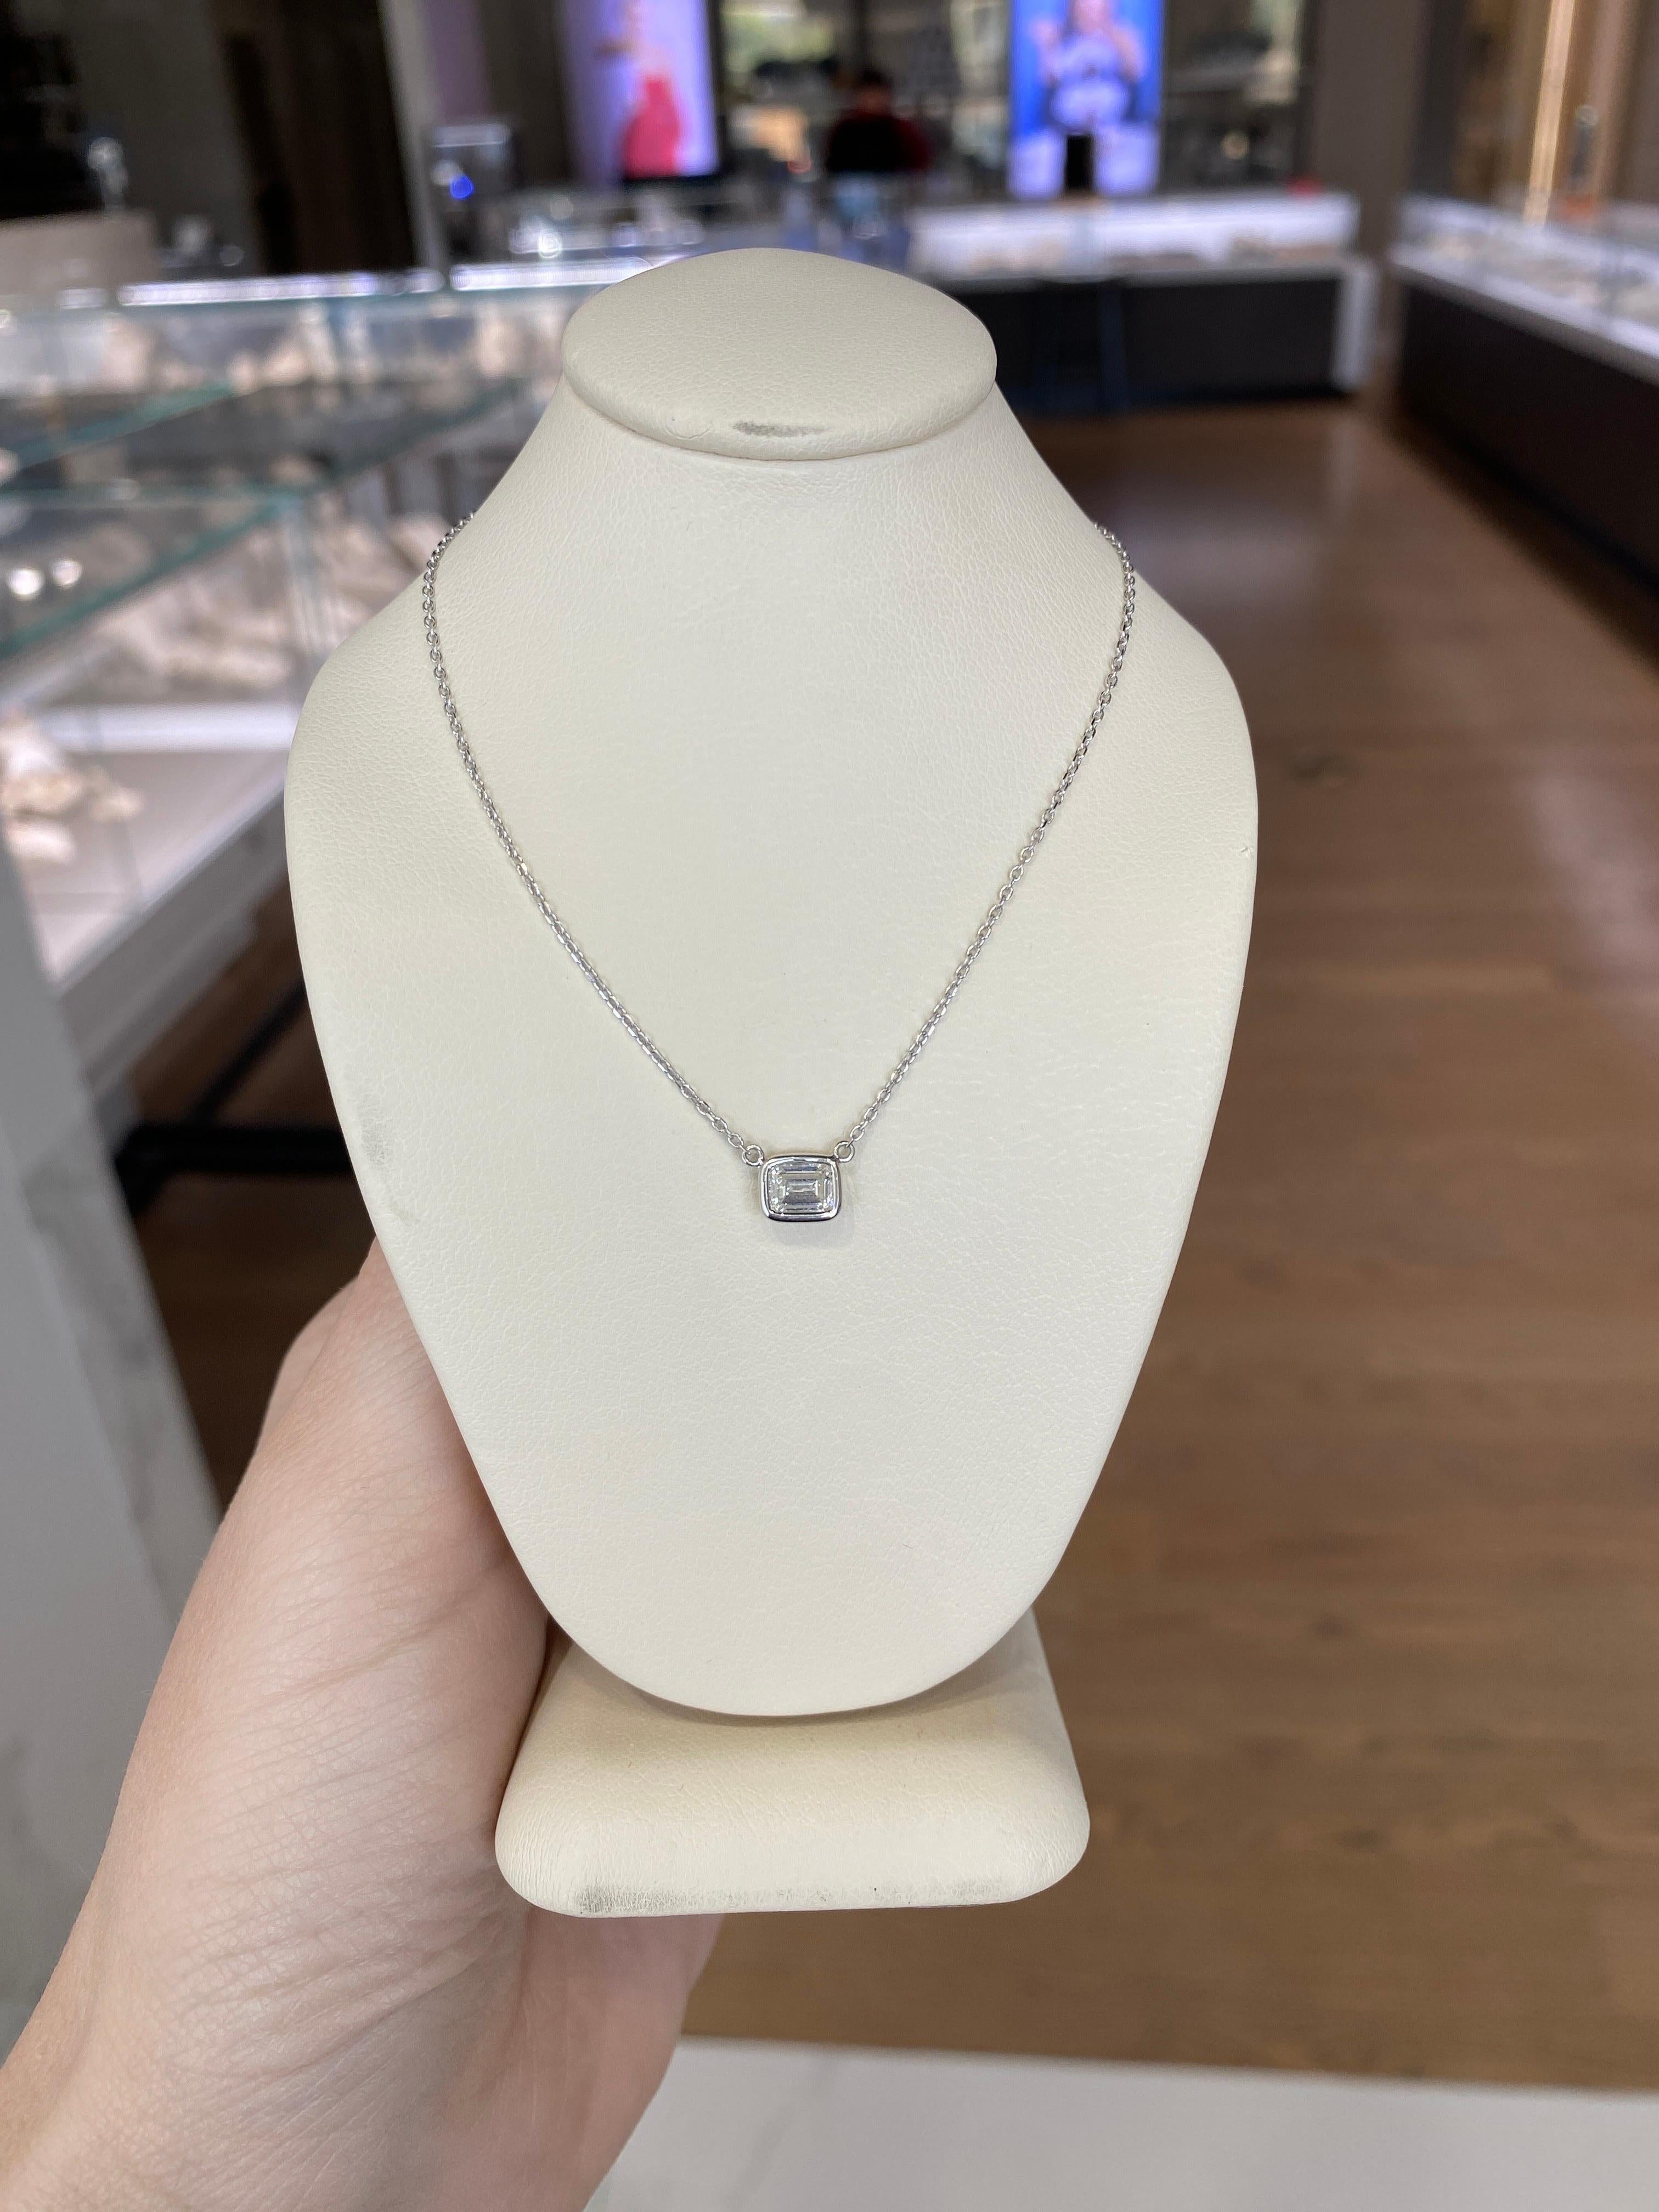 0.44 Carat Natural Emerald Cut Bezel Set Diamond Pendant Necklace 14k White Gold For Sale 11